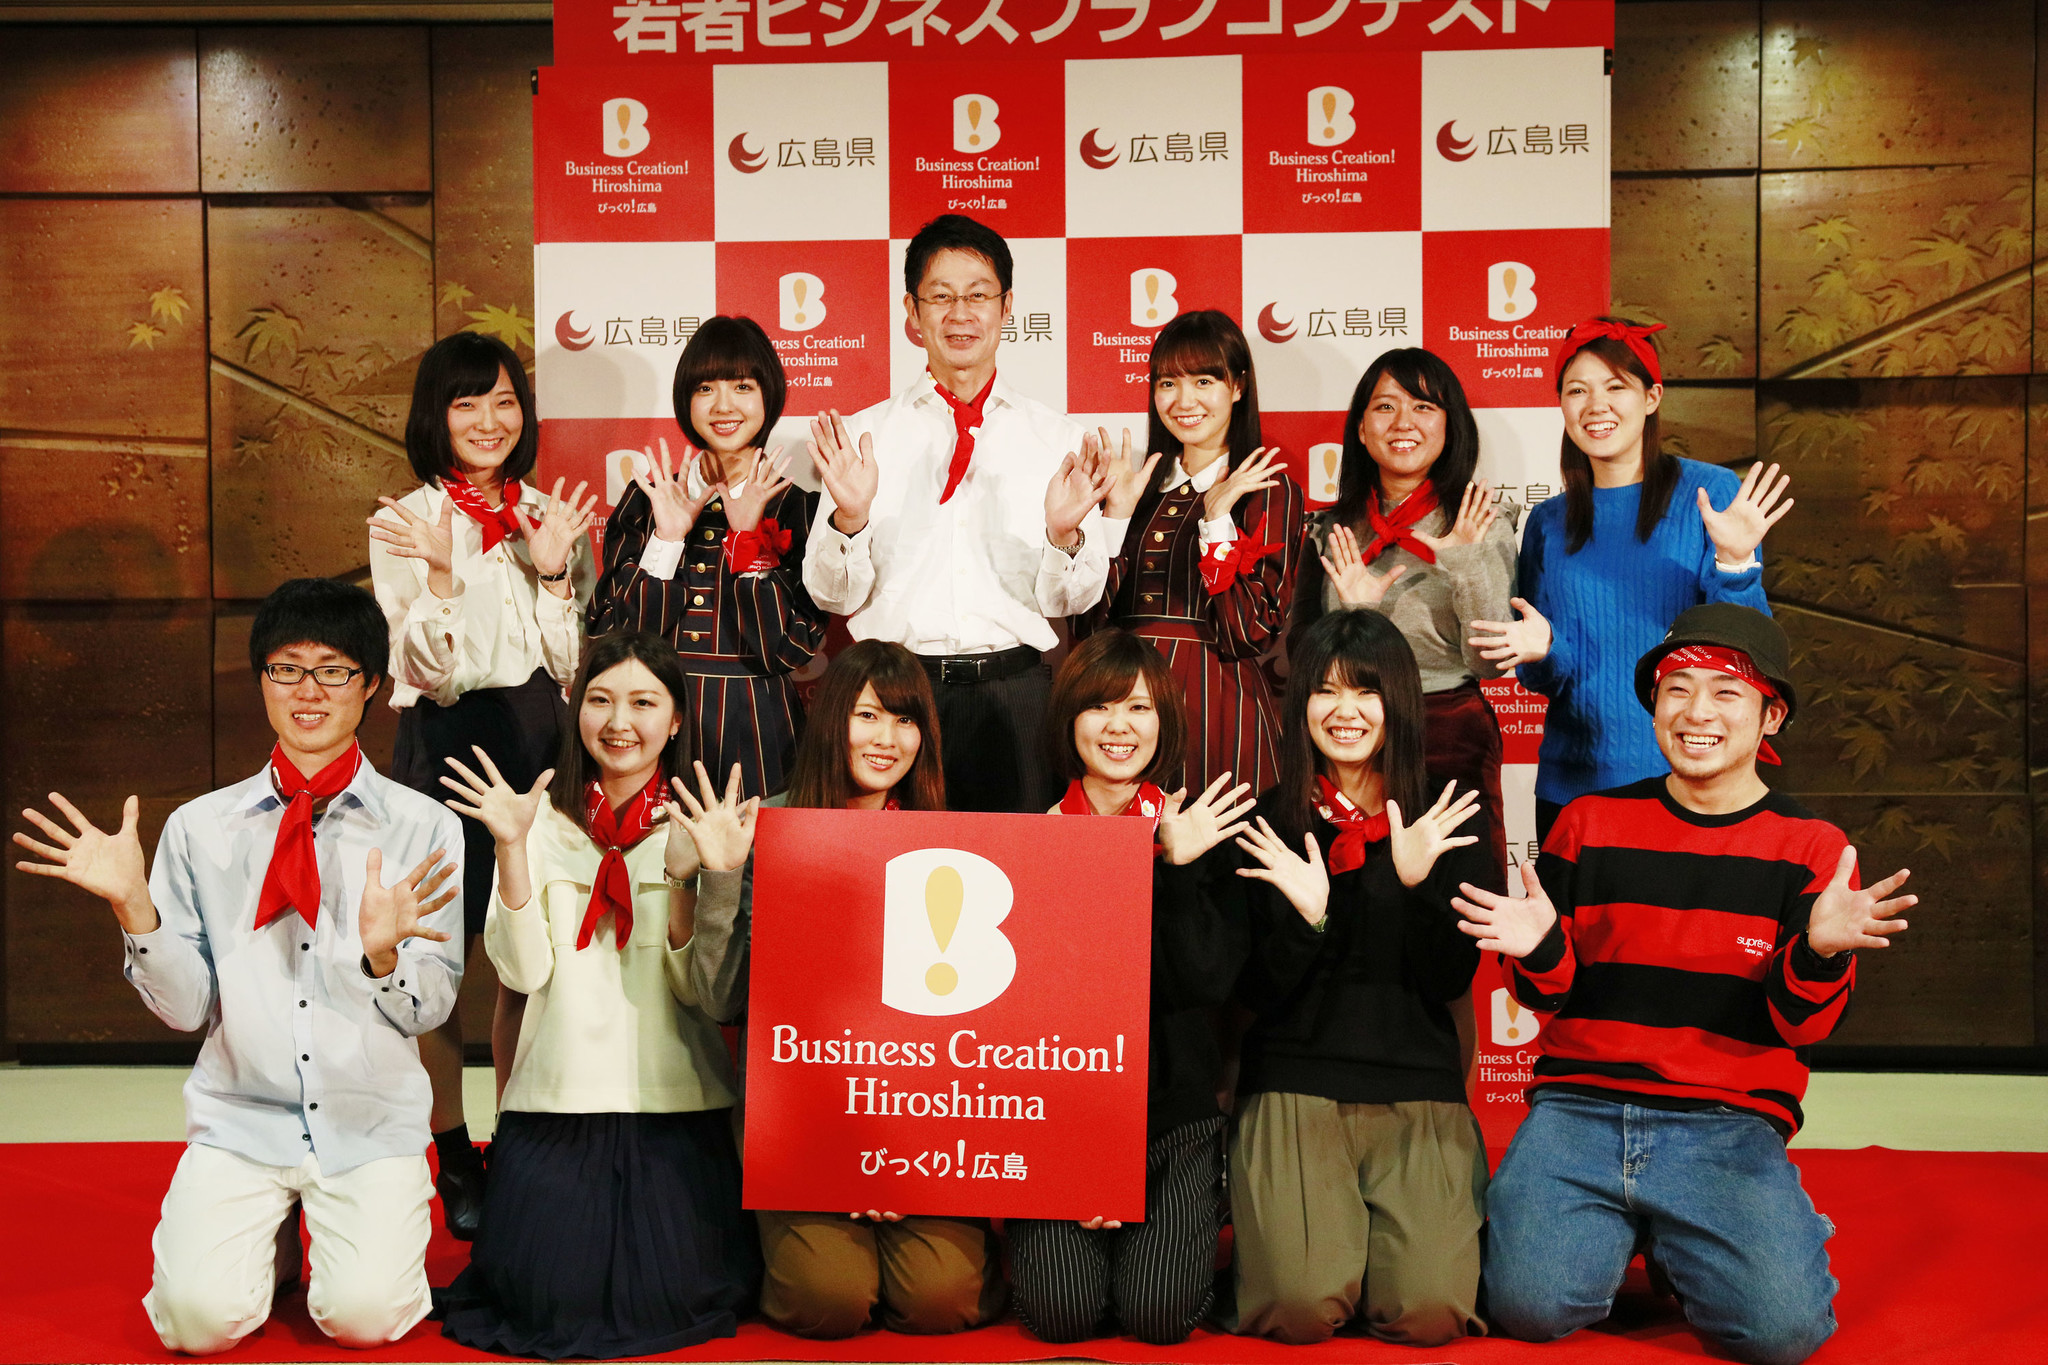 若者ビジネスコンテスト2016 Business Creation Hiroshima! 『びっくり